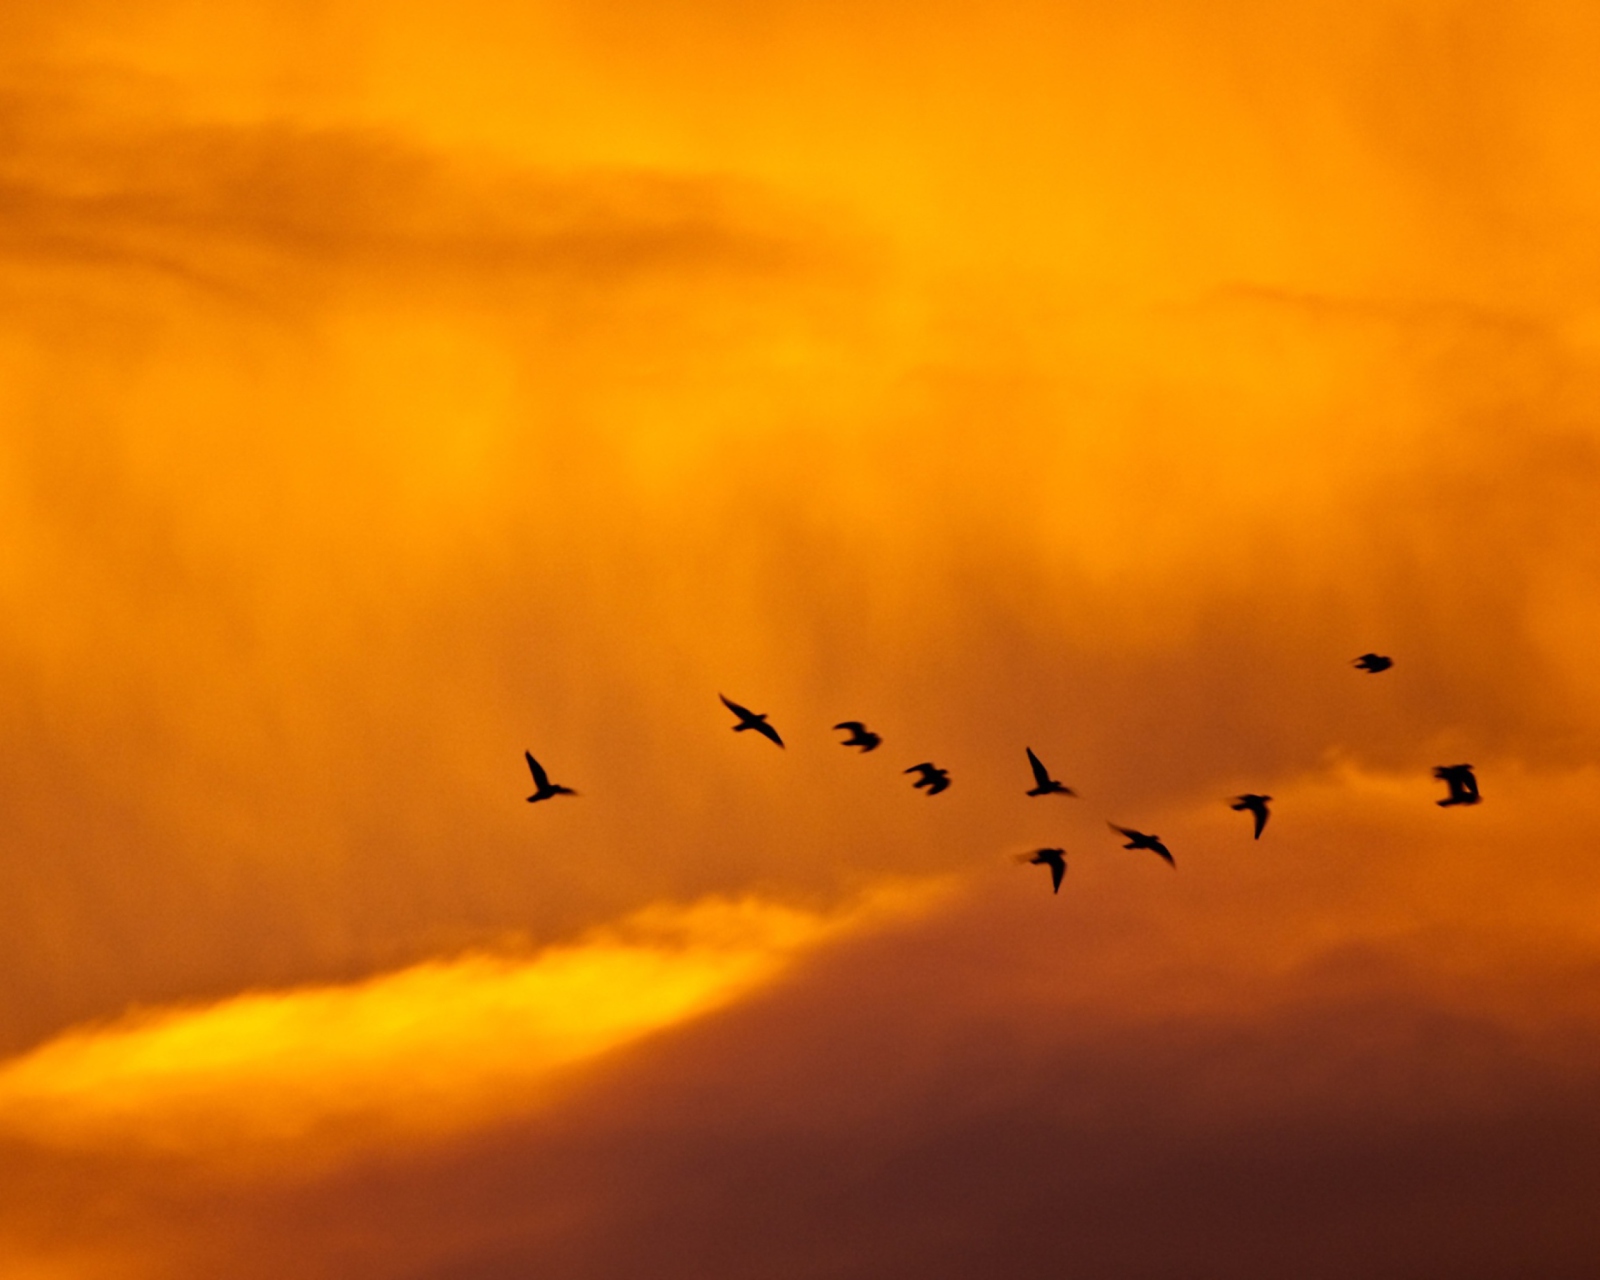 Обои Orange Sky And Birds 1600x1280